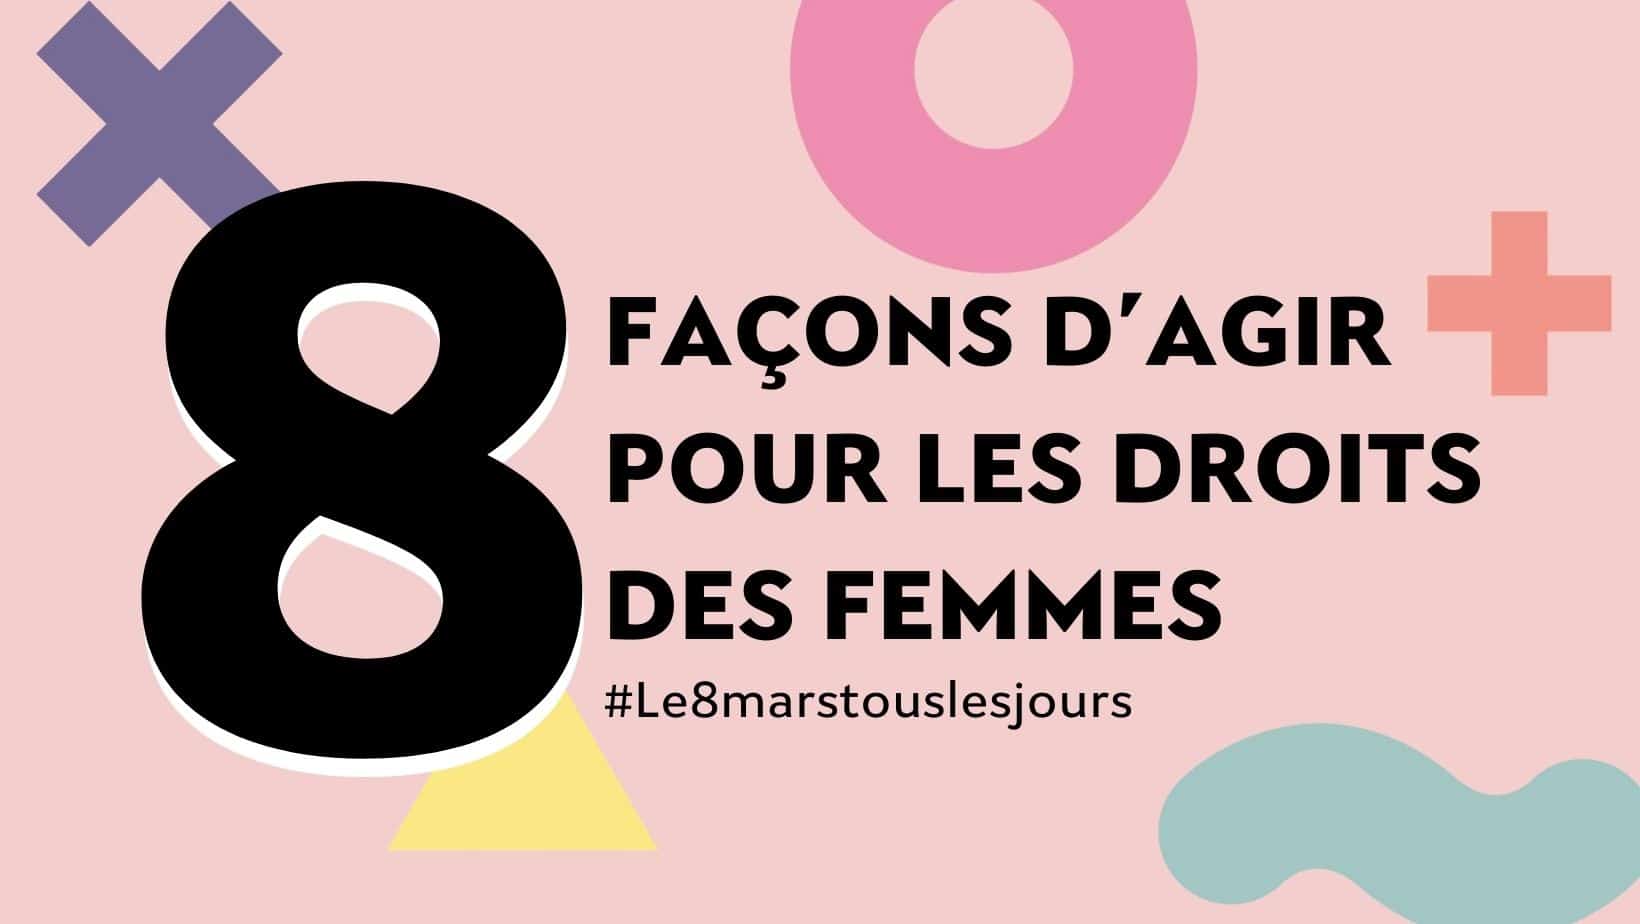 8 FAÇONS D’AGIR POUR LES DROITS DES FEMMES